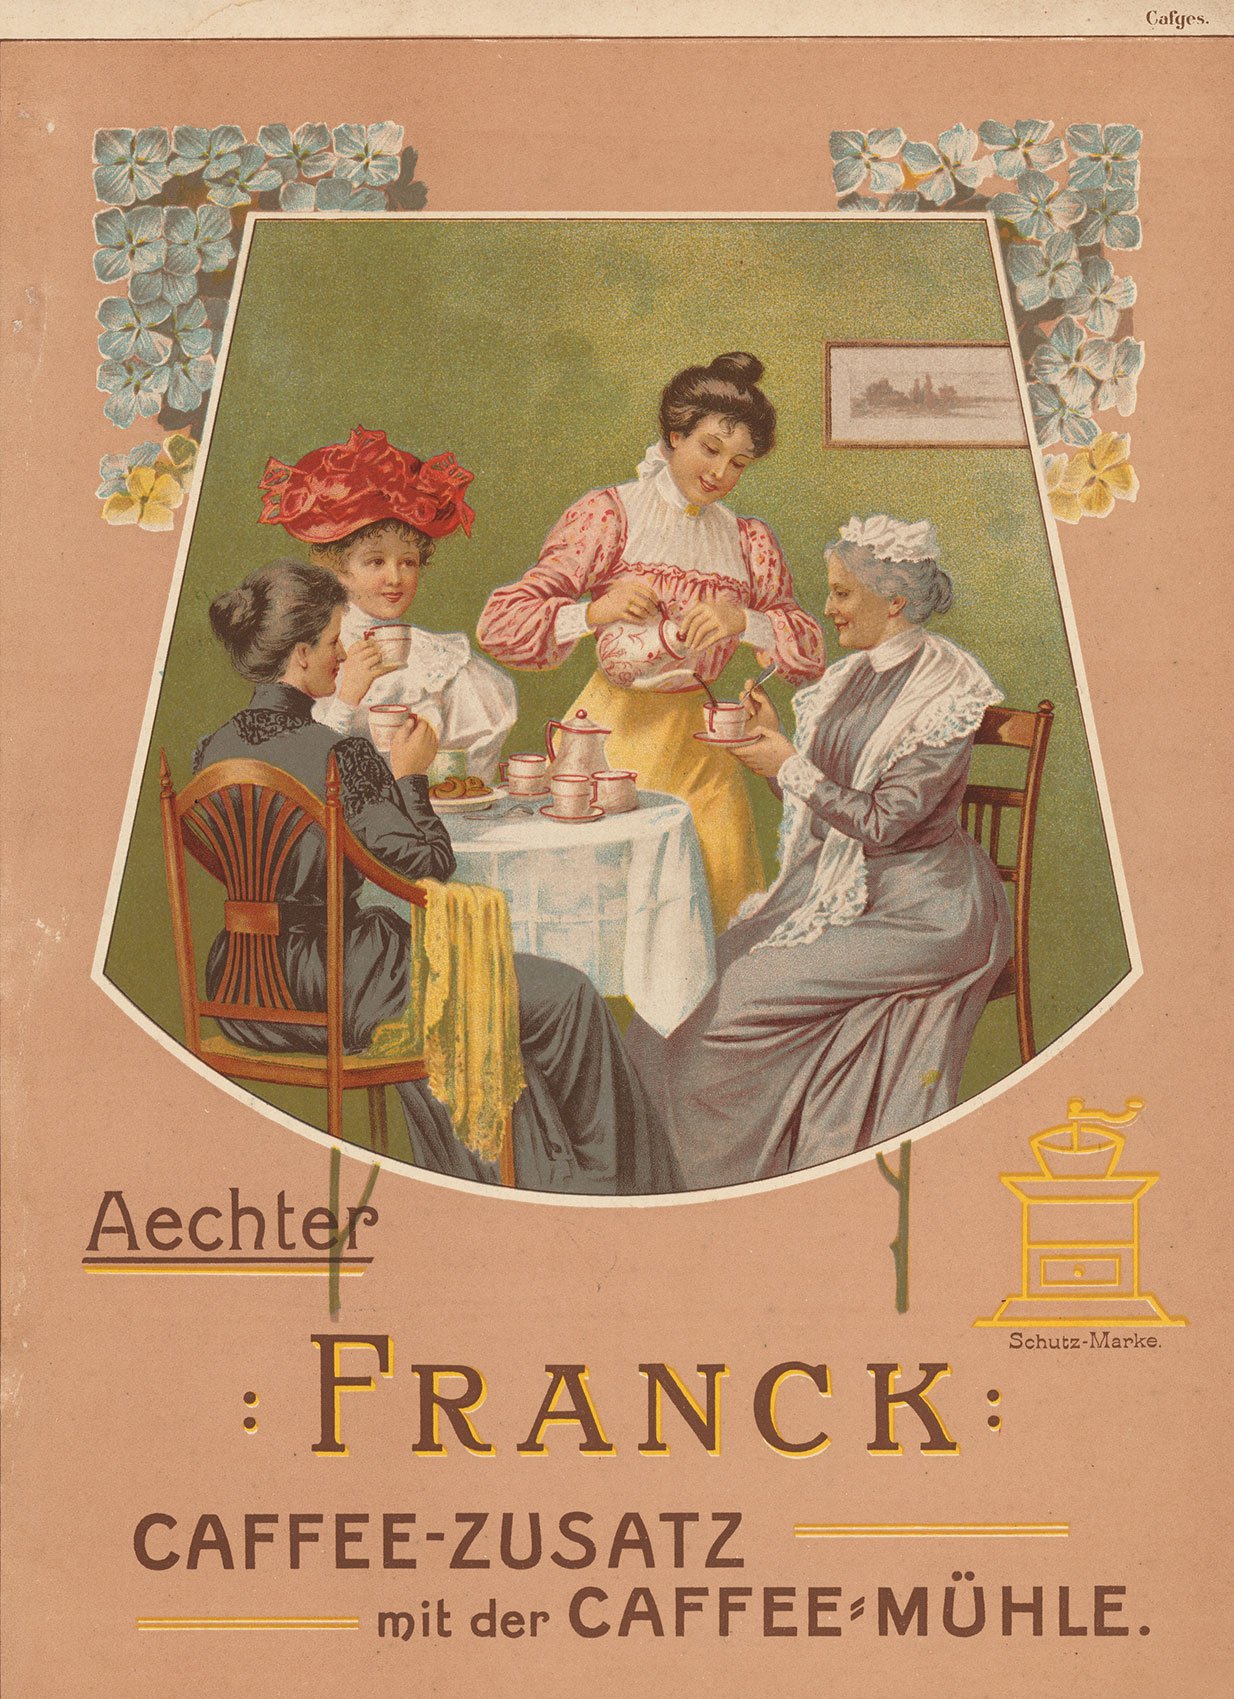 Reklama, přelom 19. a 20. století